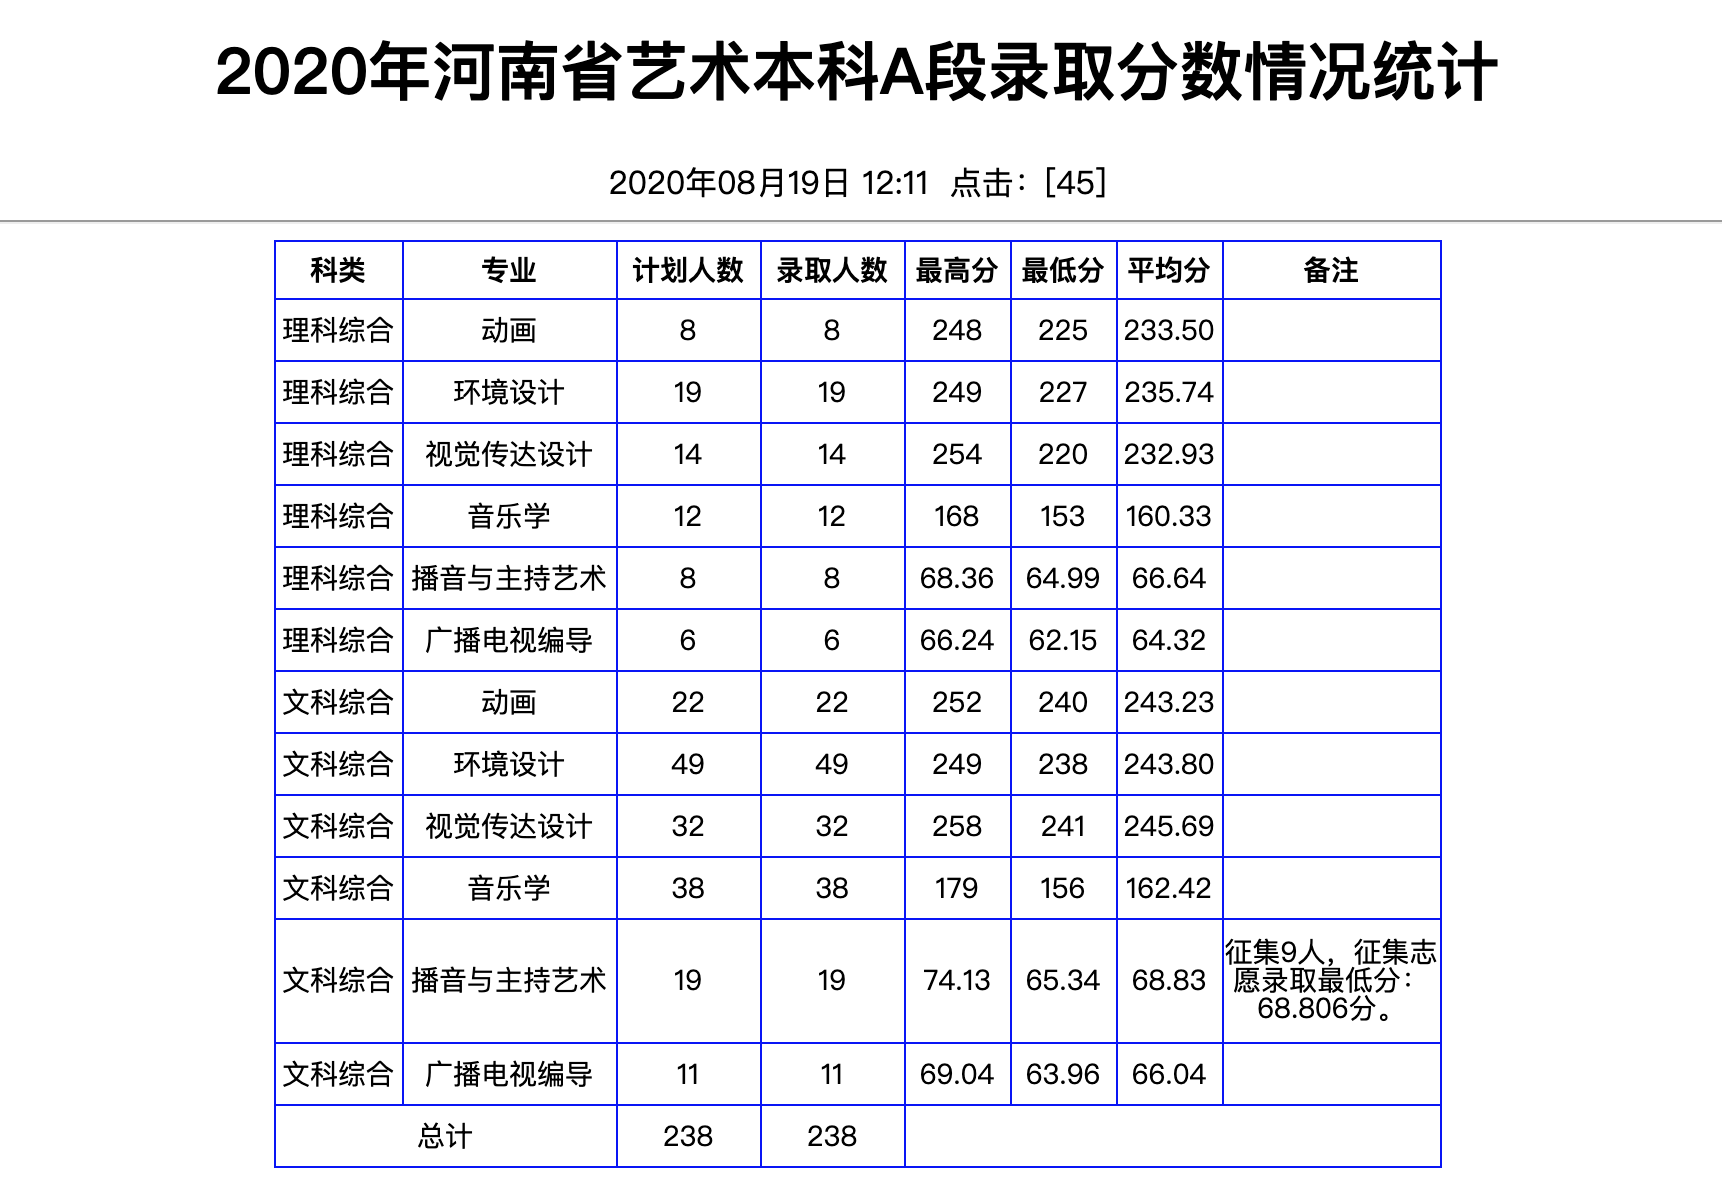 南阳理工学院2020年河南省艺术本科A段录取分数情况统计